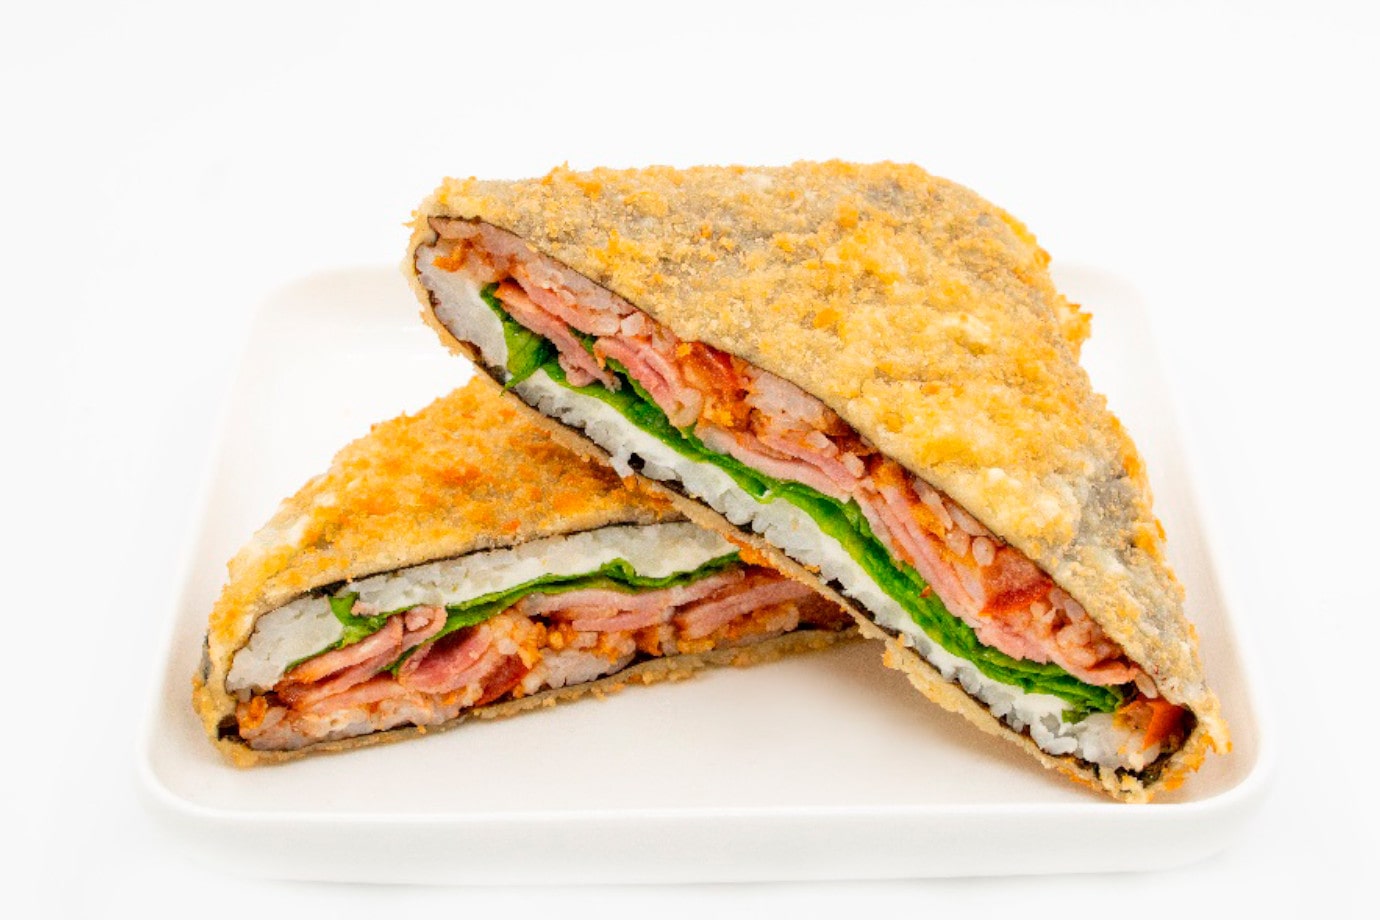 Заказать Сэндвич с беконом с доставкой на дом в Бийске, Империя суши